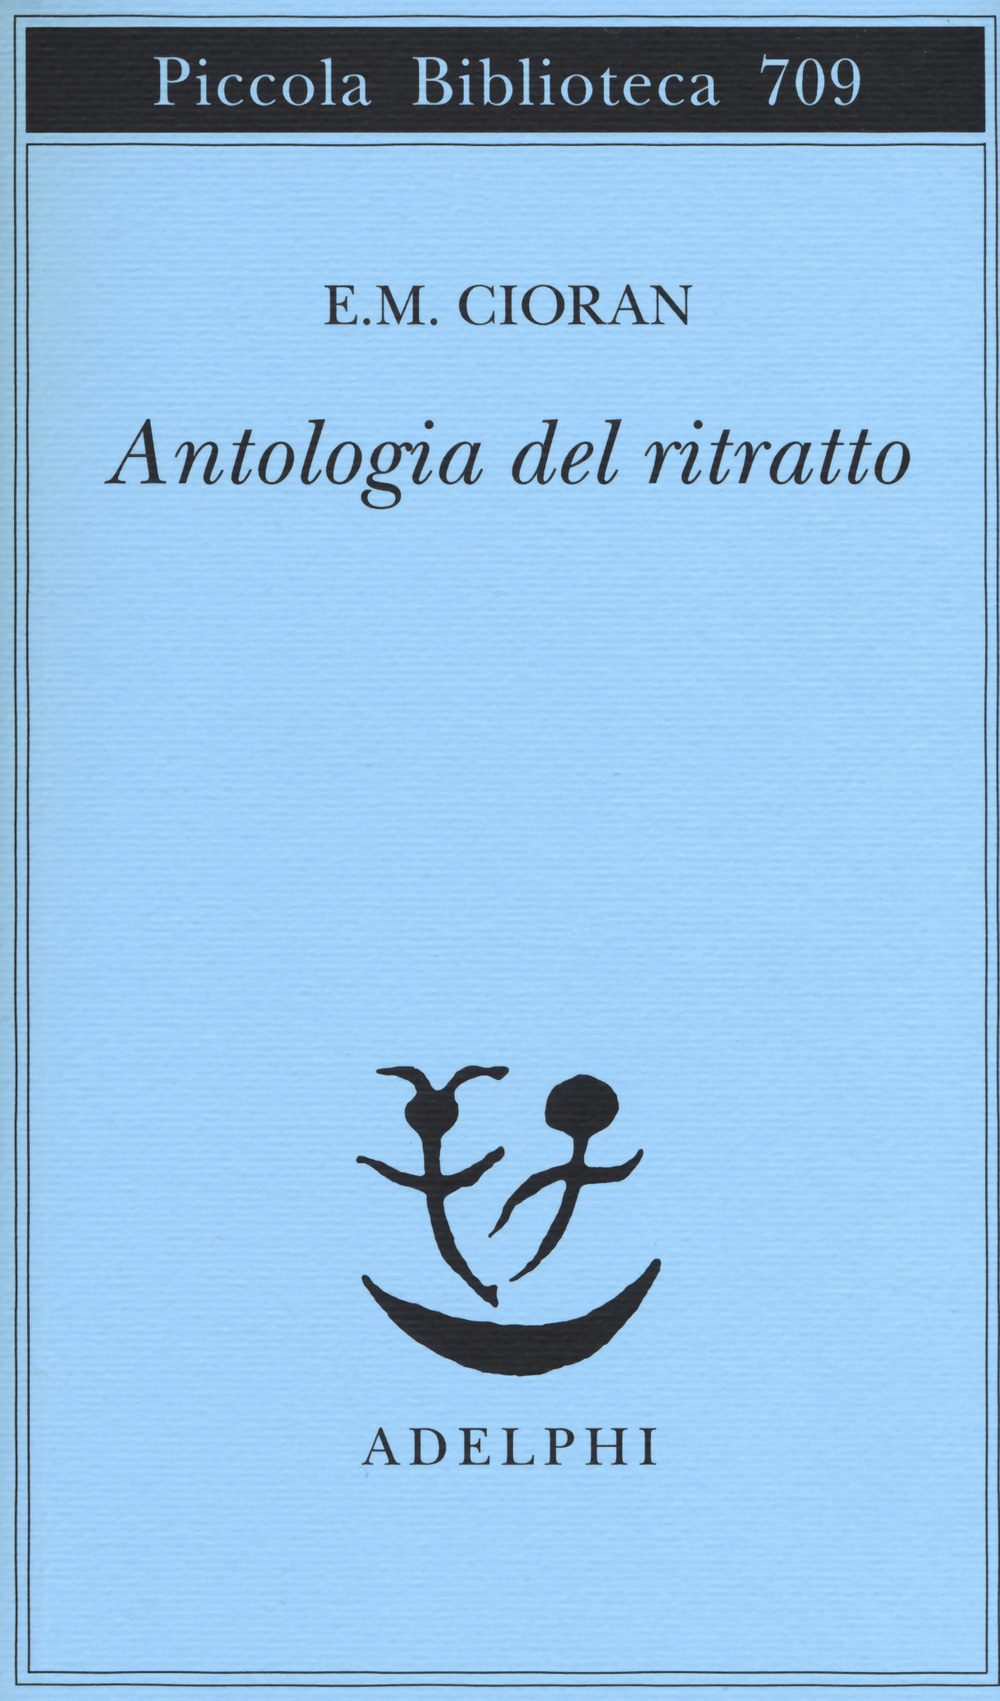 Image of Antologia del ritratto